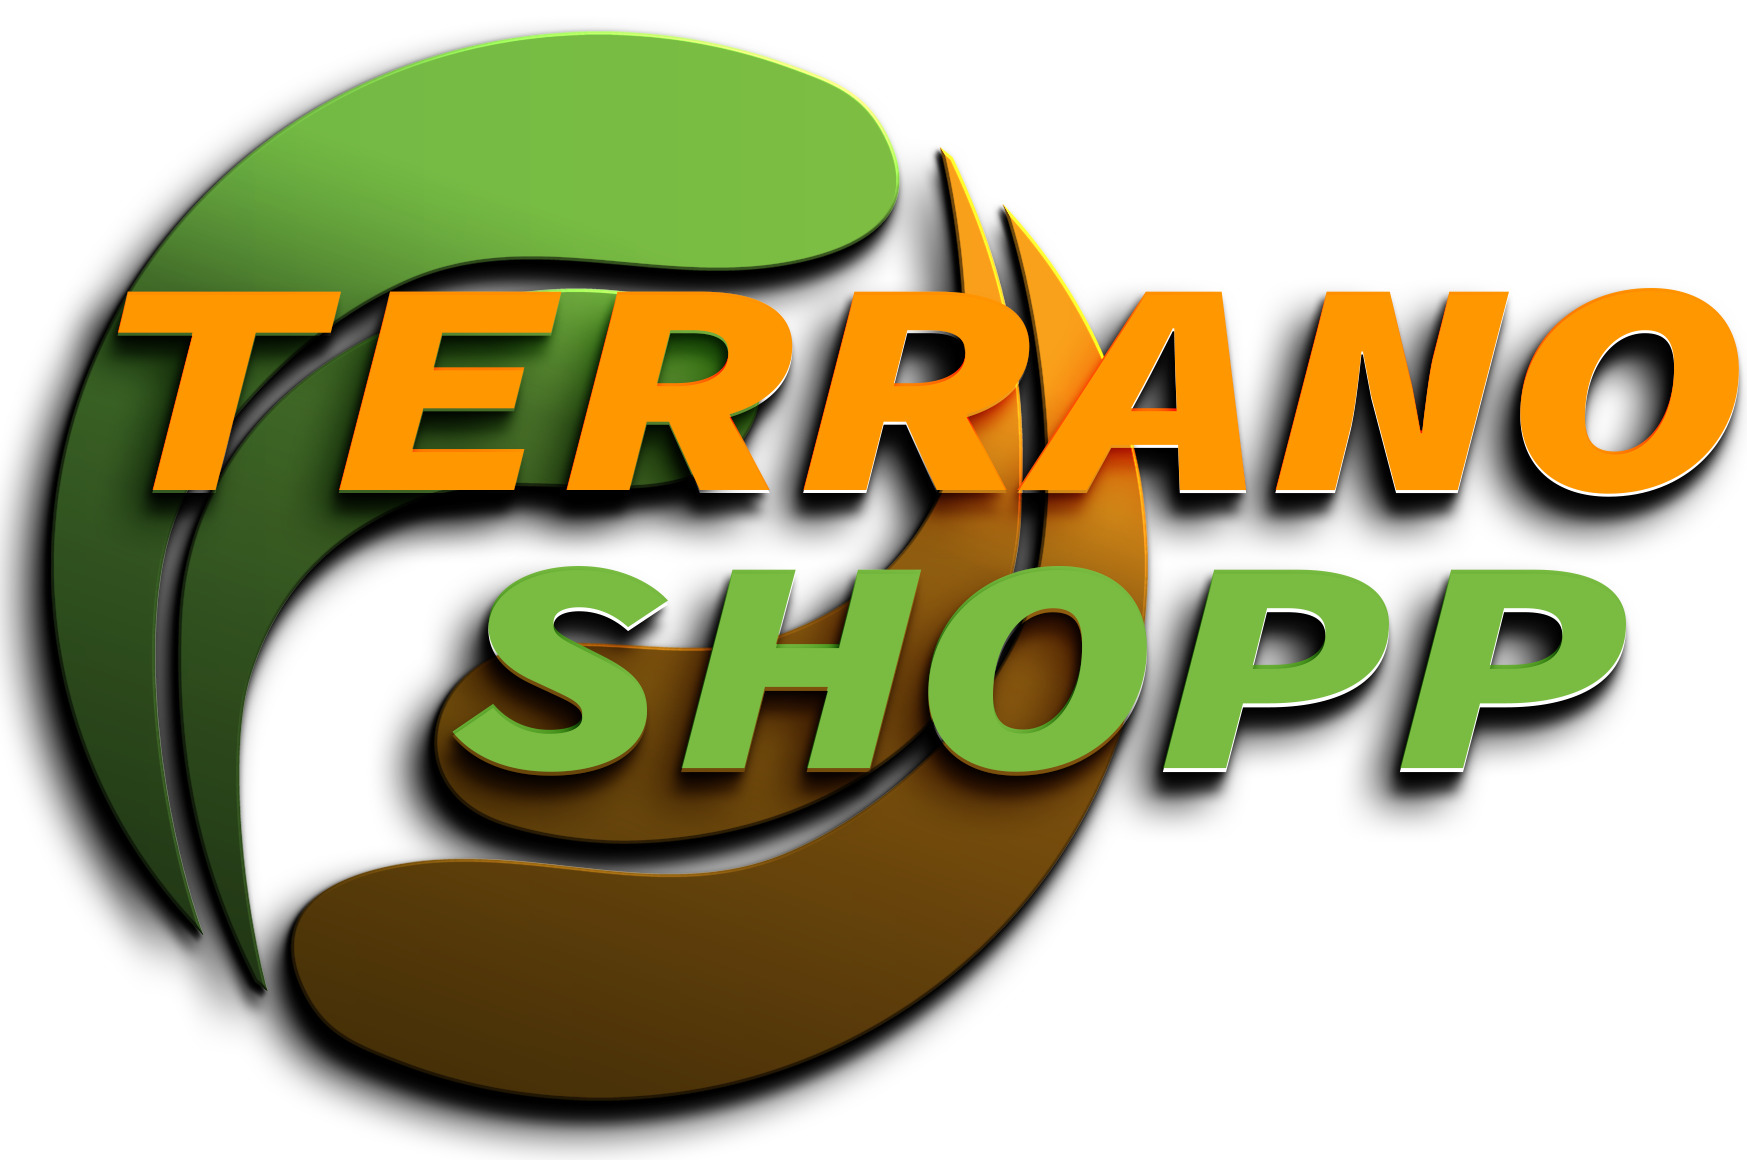 Terrano shopp E-commerce